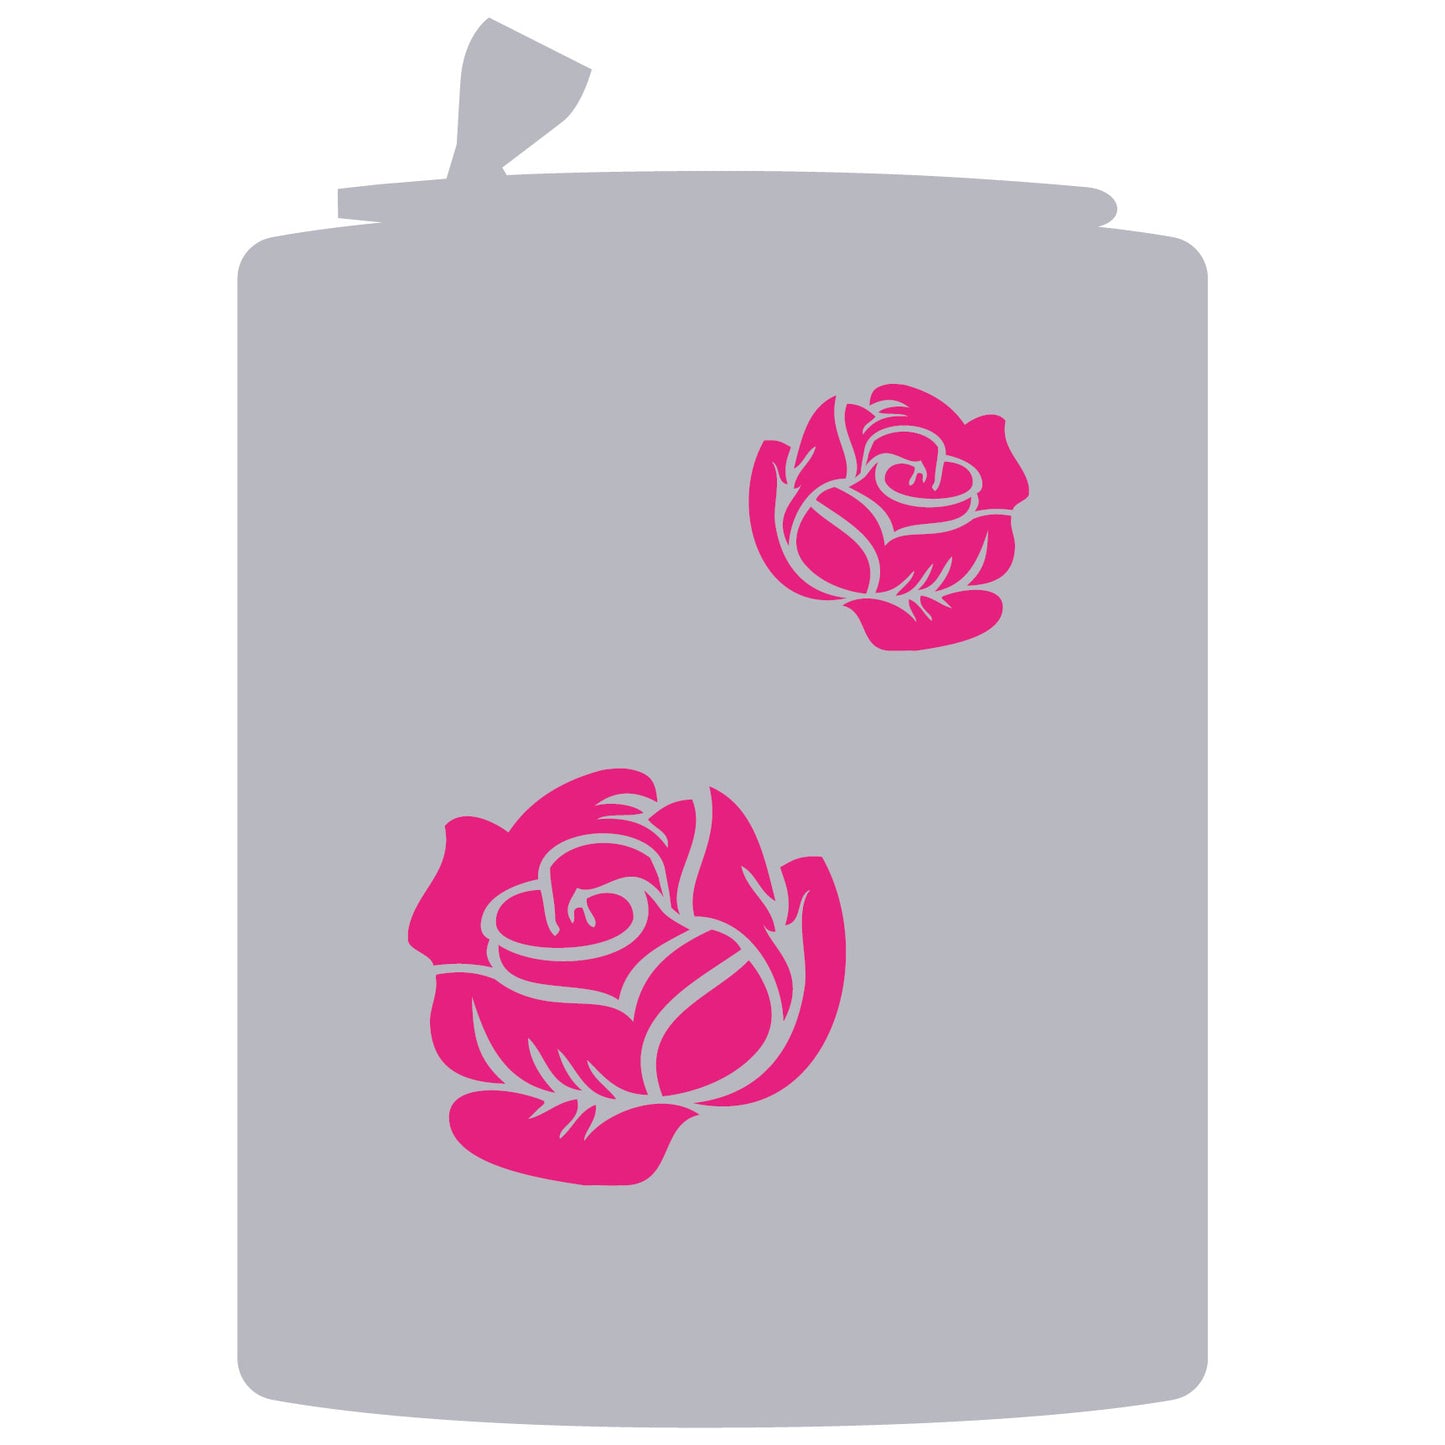 Rosa semplice - Art. n.46 - LCDRS0046 Stencil 1 livello